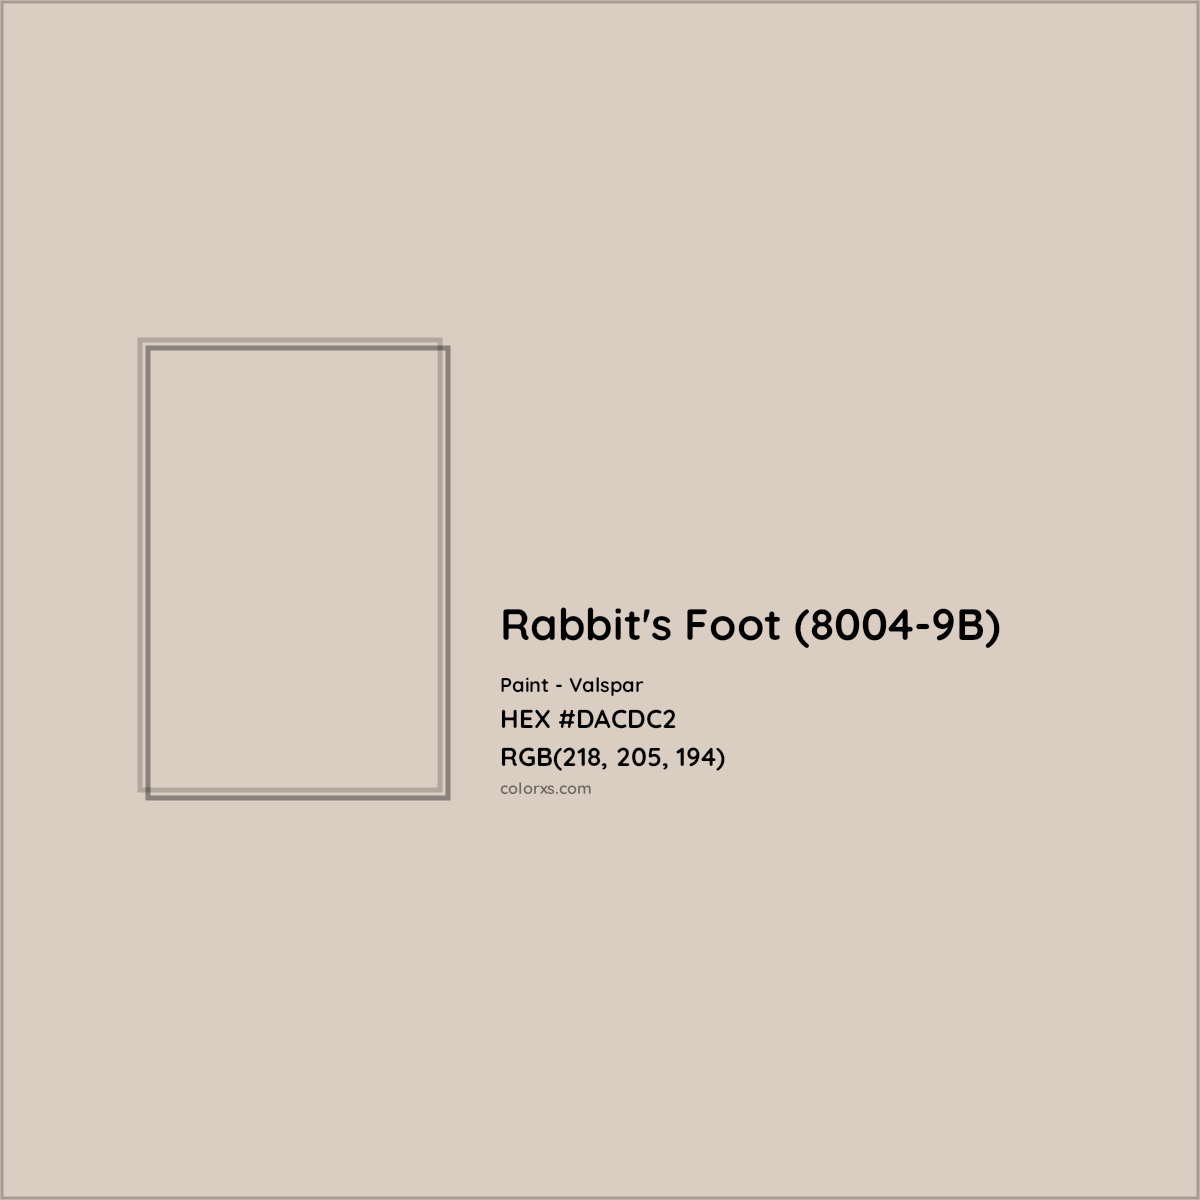 HEX #DACDC2 Rabbit's Foot (8004-9B) Paint Valspar - Color Code